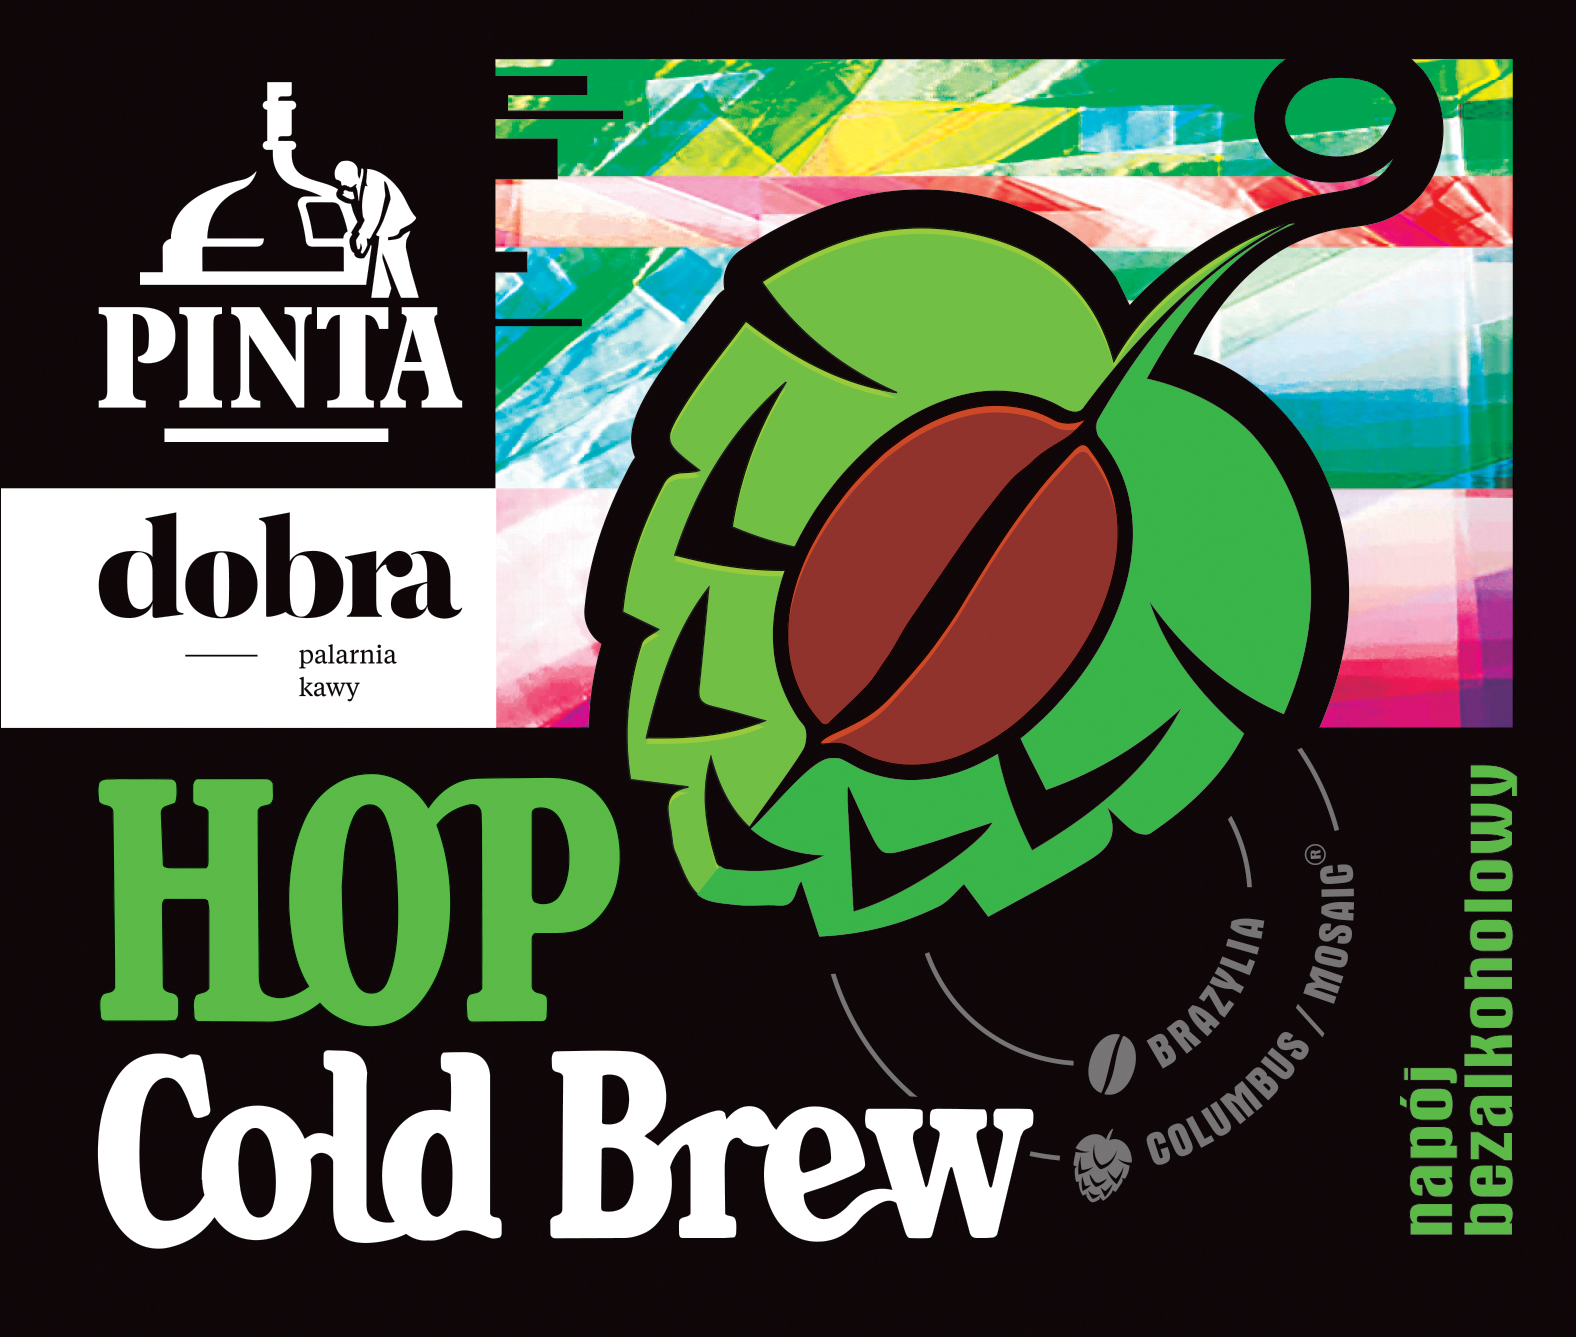 Hop Cold Brew - Browar Pinta i Dobra Palarnia Kawy - kawa z chmielem